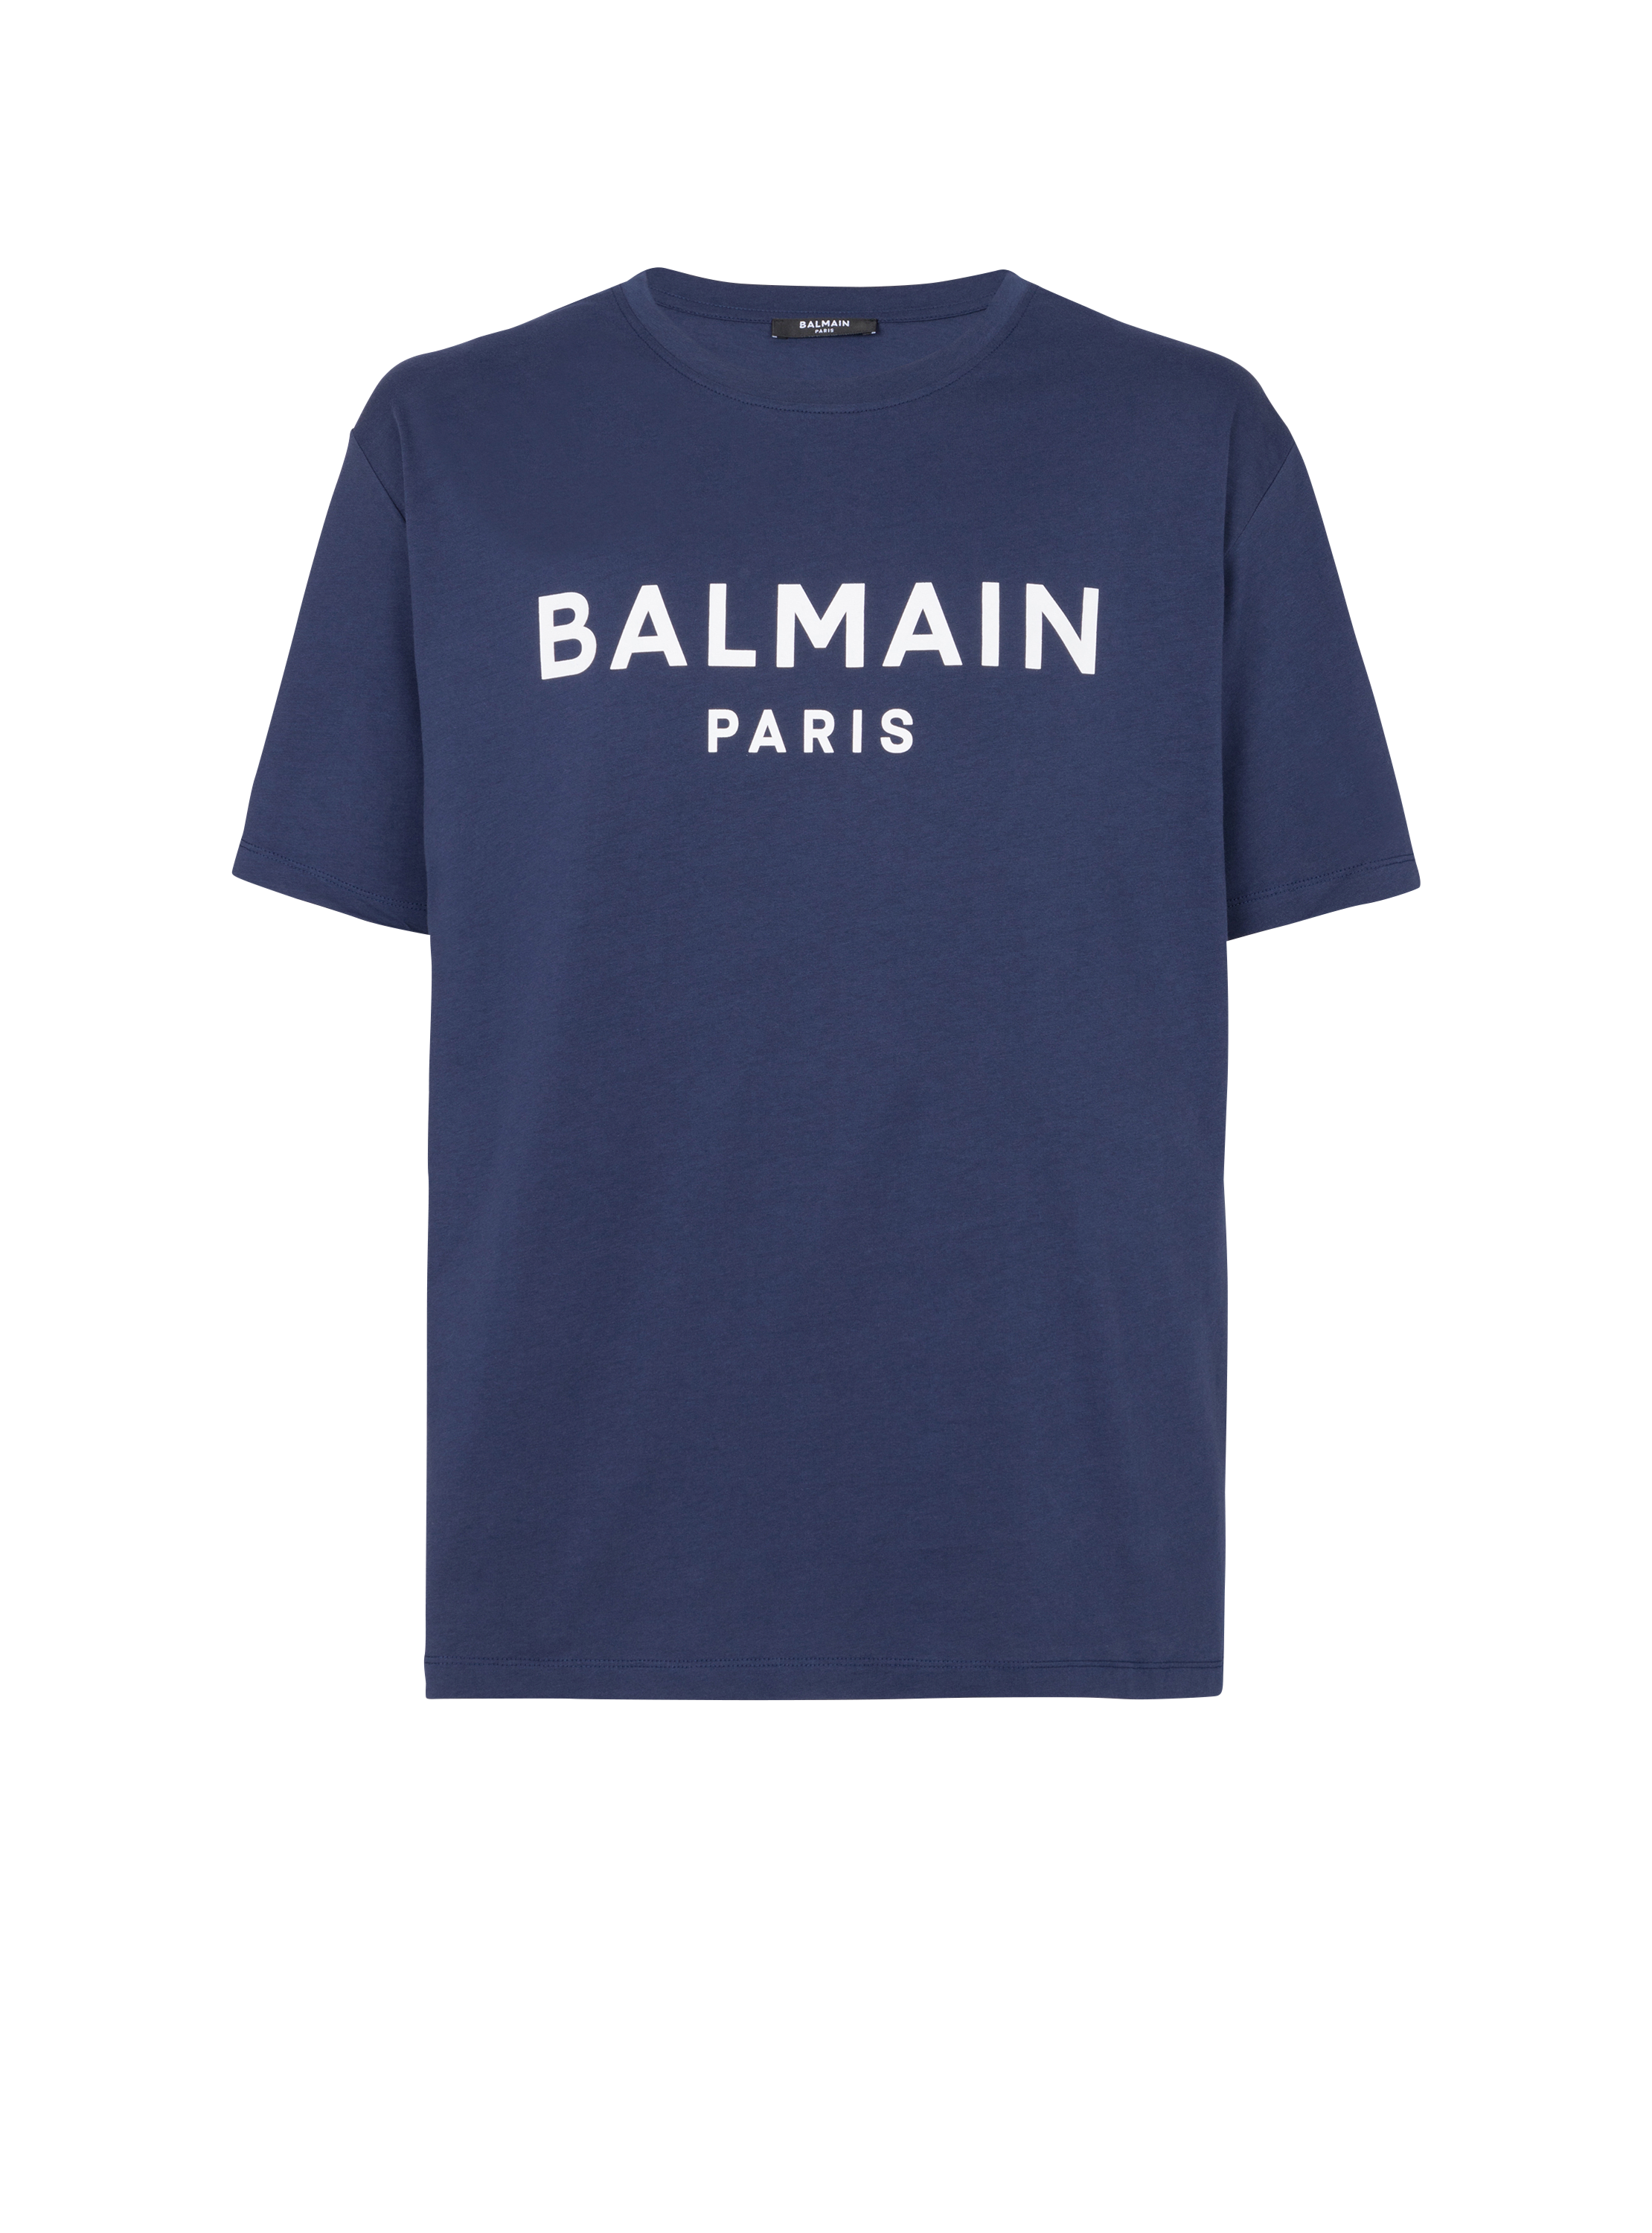 Balmain Paris T-shirt, marineblau, hi-res